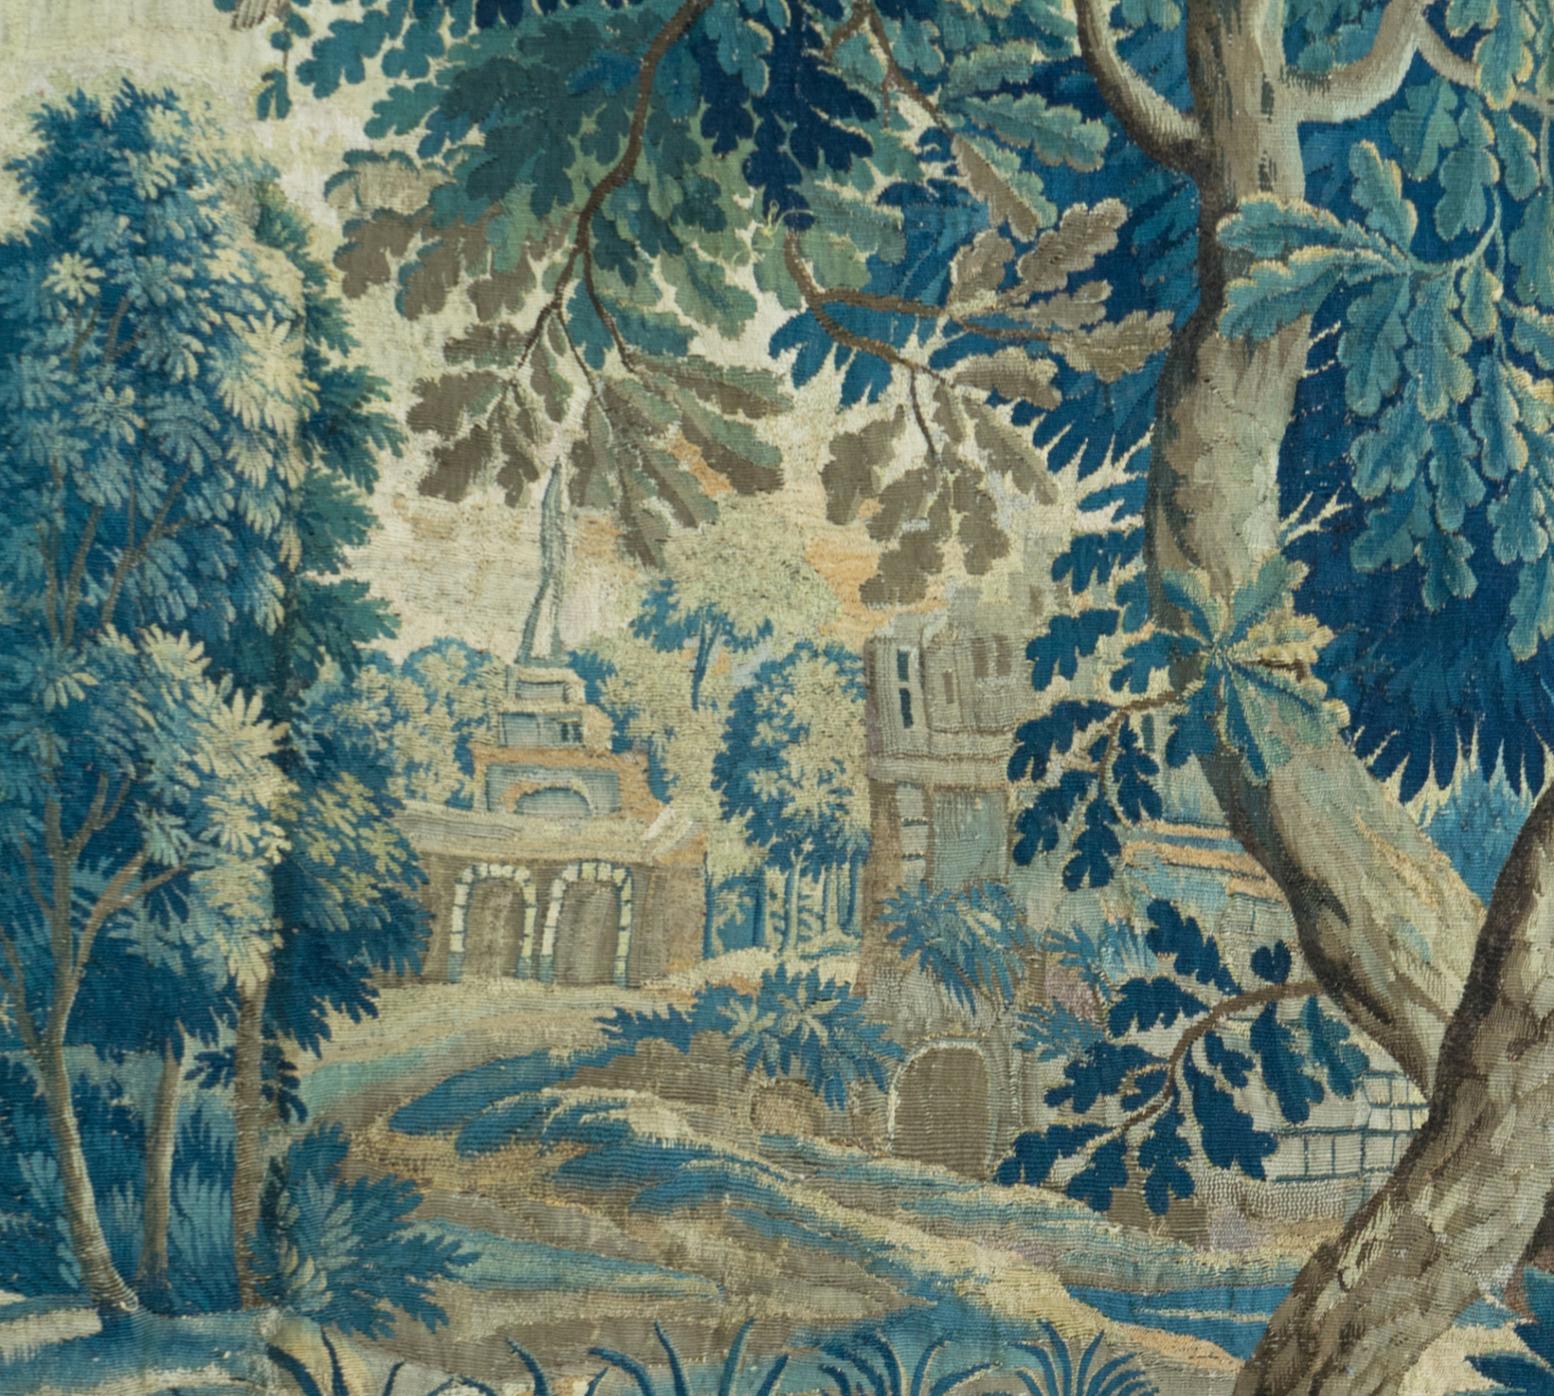 Dies ist eine wunderschöne antike quadratische 18. Jahrhundert flämischen verdure Landschaft Wandteppich mit Vögeln, die eine schöne und reiche Sommer-Szene von einer Landschaft mit üppigen Bäumen und Vegetation, Hähne, Vögel füttern ihre Jungen,